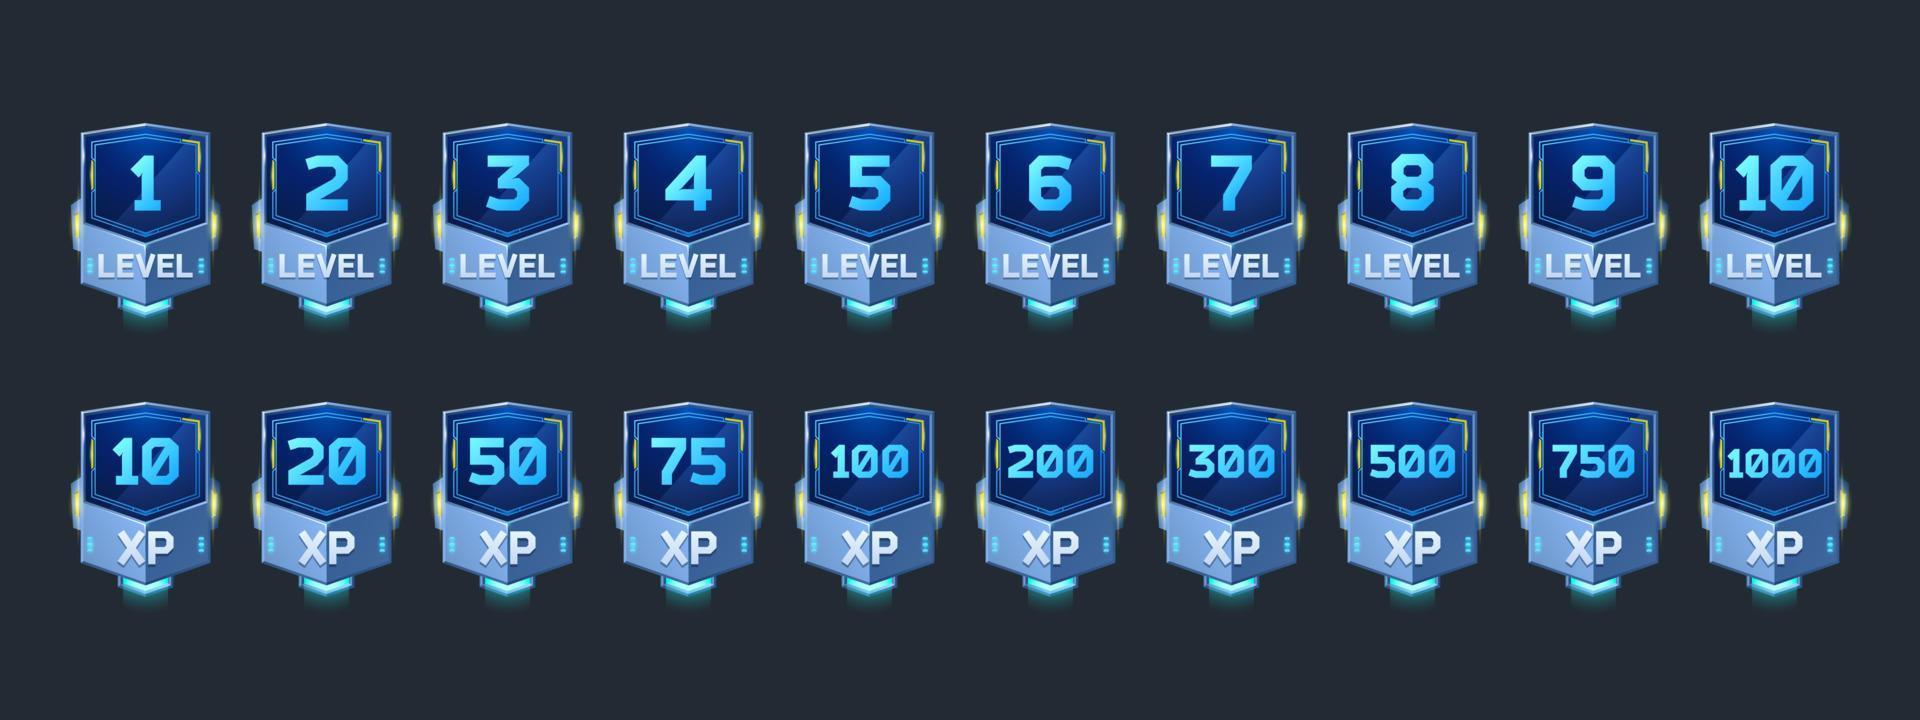 insignias con número de nivel y xp para el juego vector